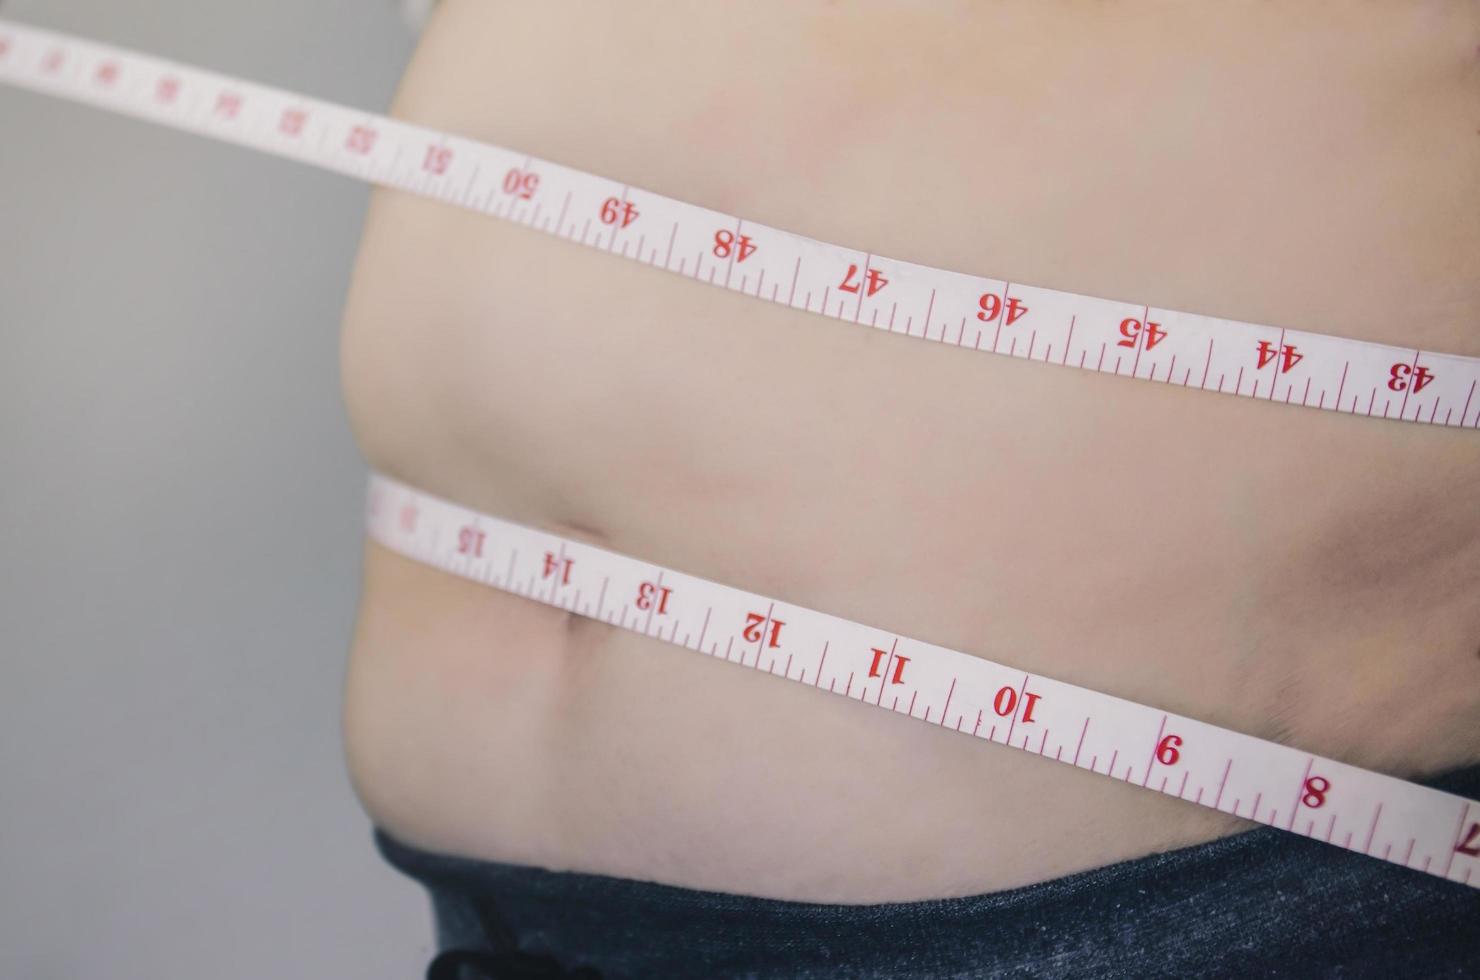 människokropp och fettkropp, stöt eller mage och övervikt av människor. foto